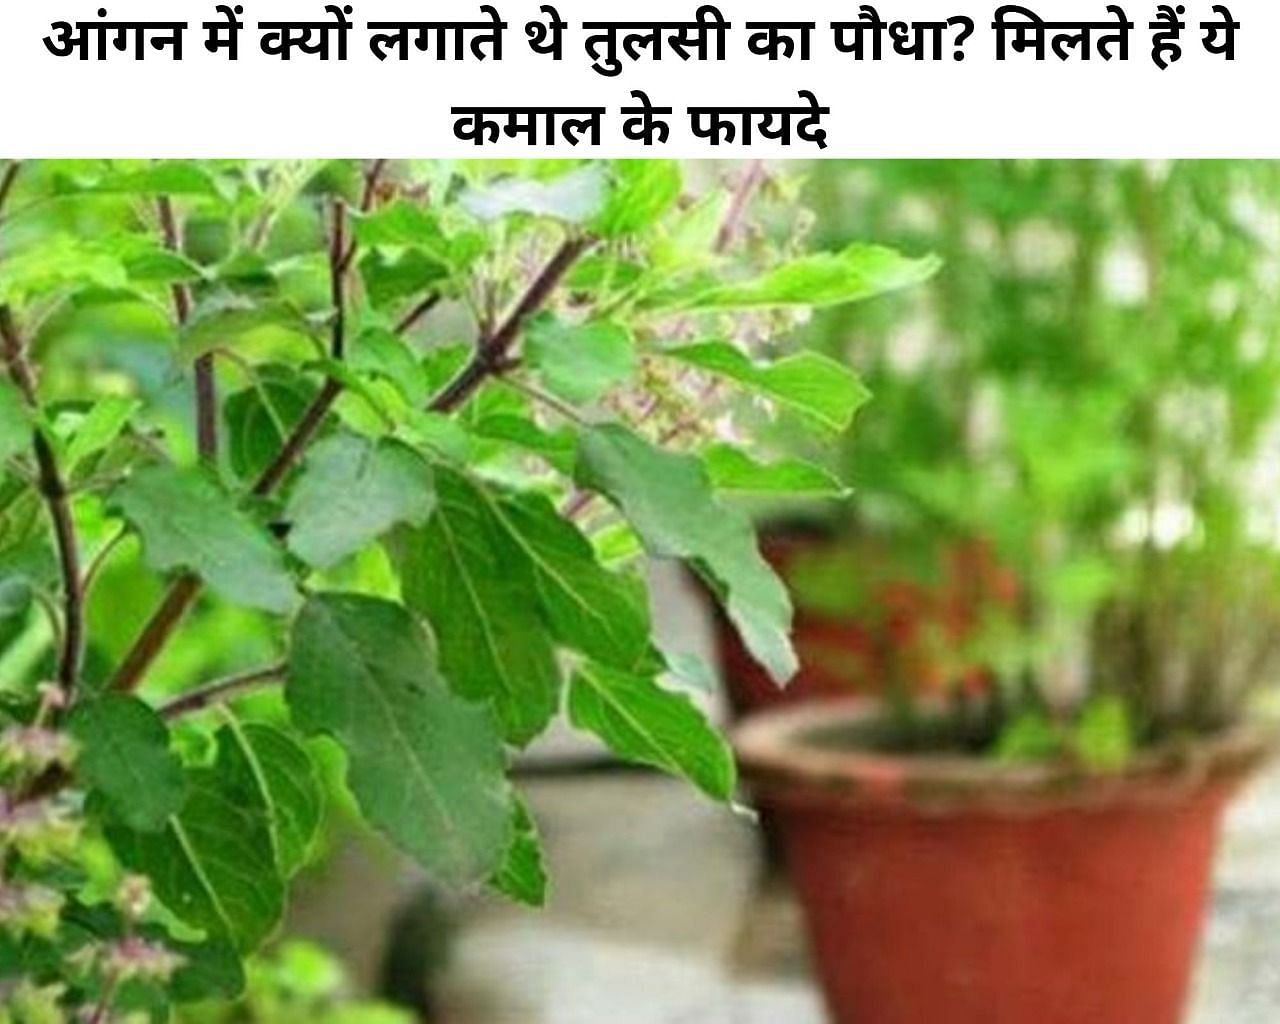 आंगन में क्यों लगाते थे तुलसी का पौधा? मिलते हैं ये कमाल के फायदे (फोटो - sportskeeda hindi)